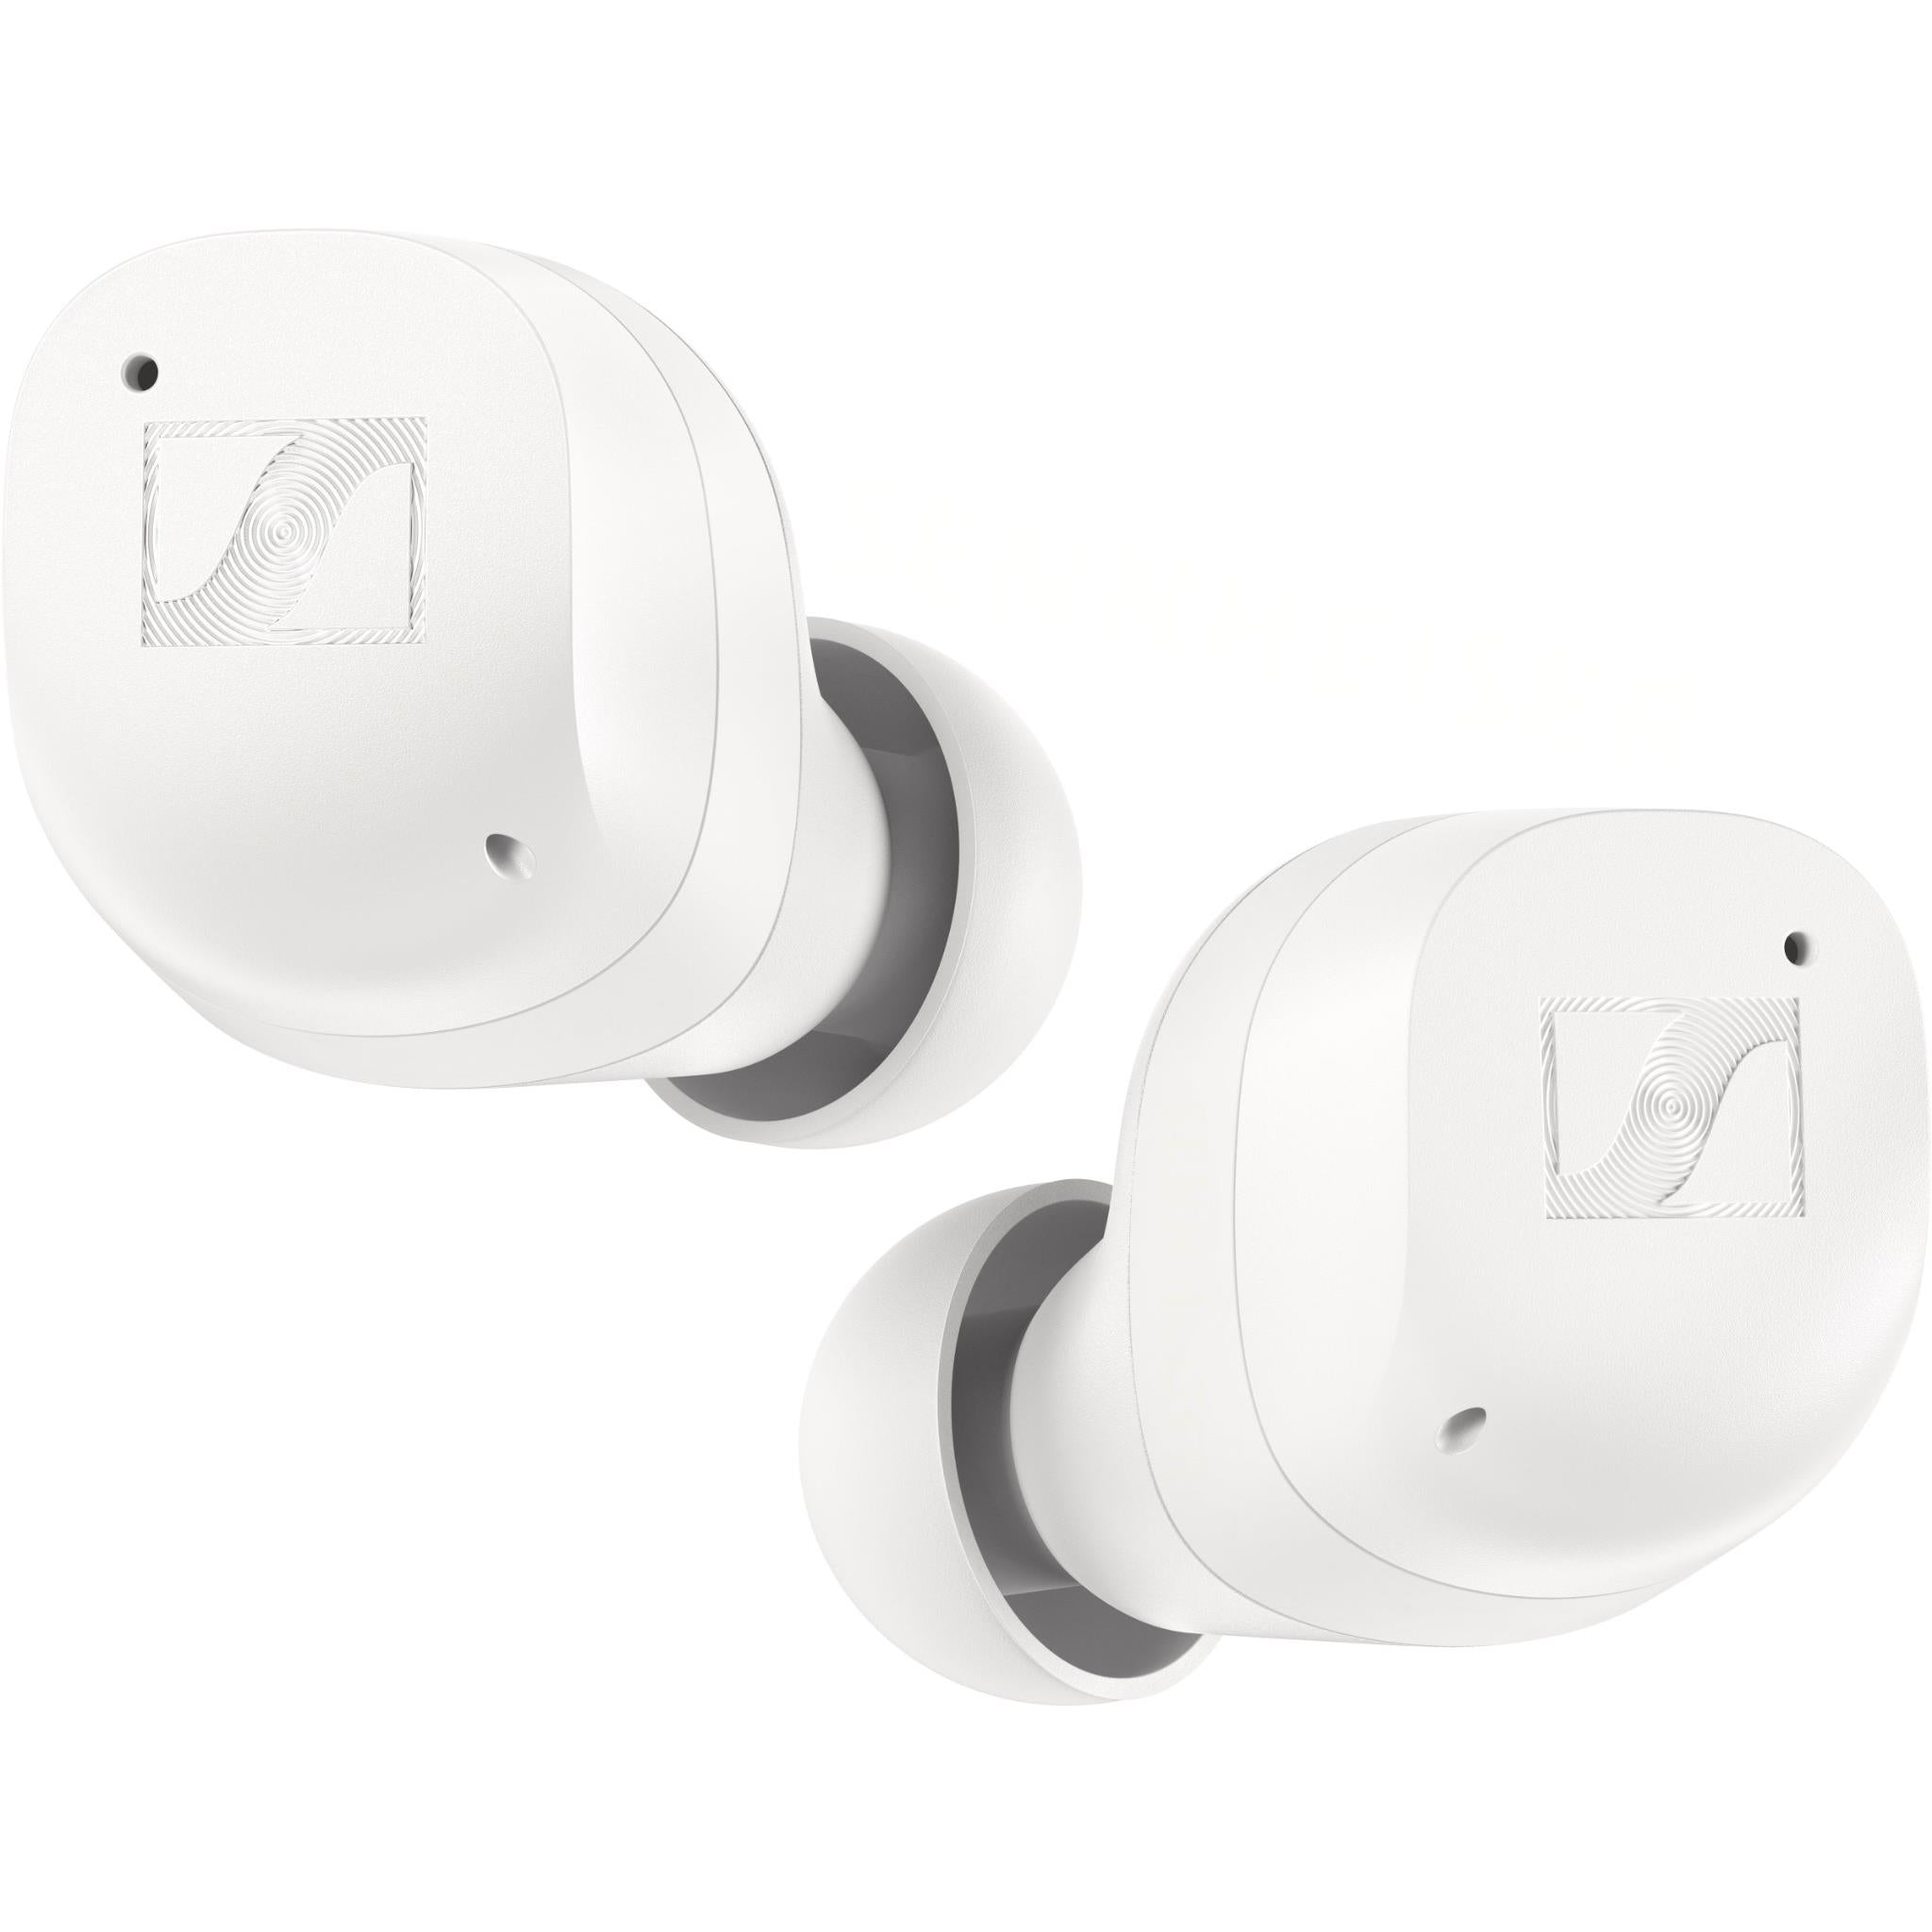 sennheiser momentum true wireless 3 anc in-ear headphones (white)